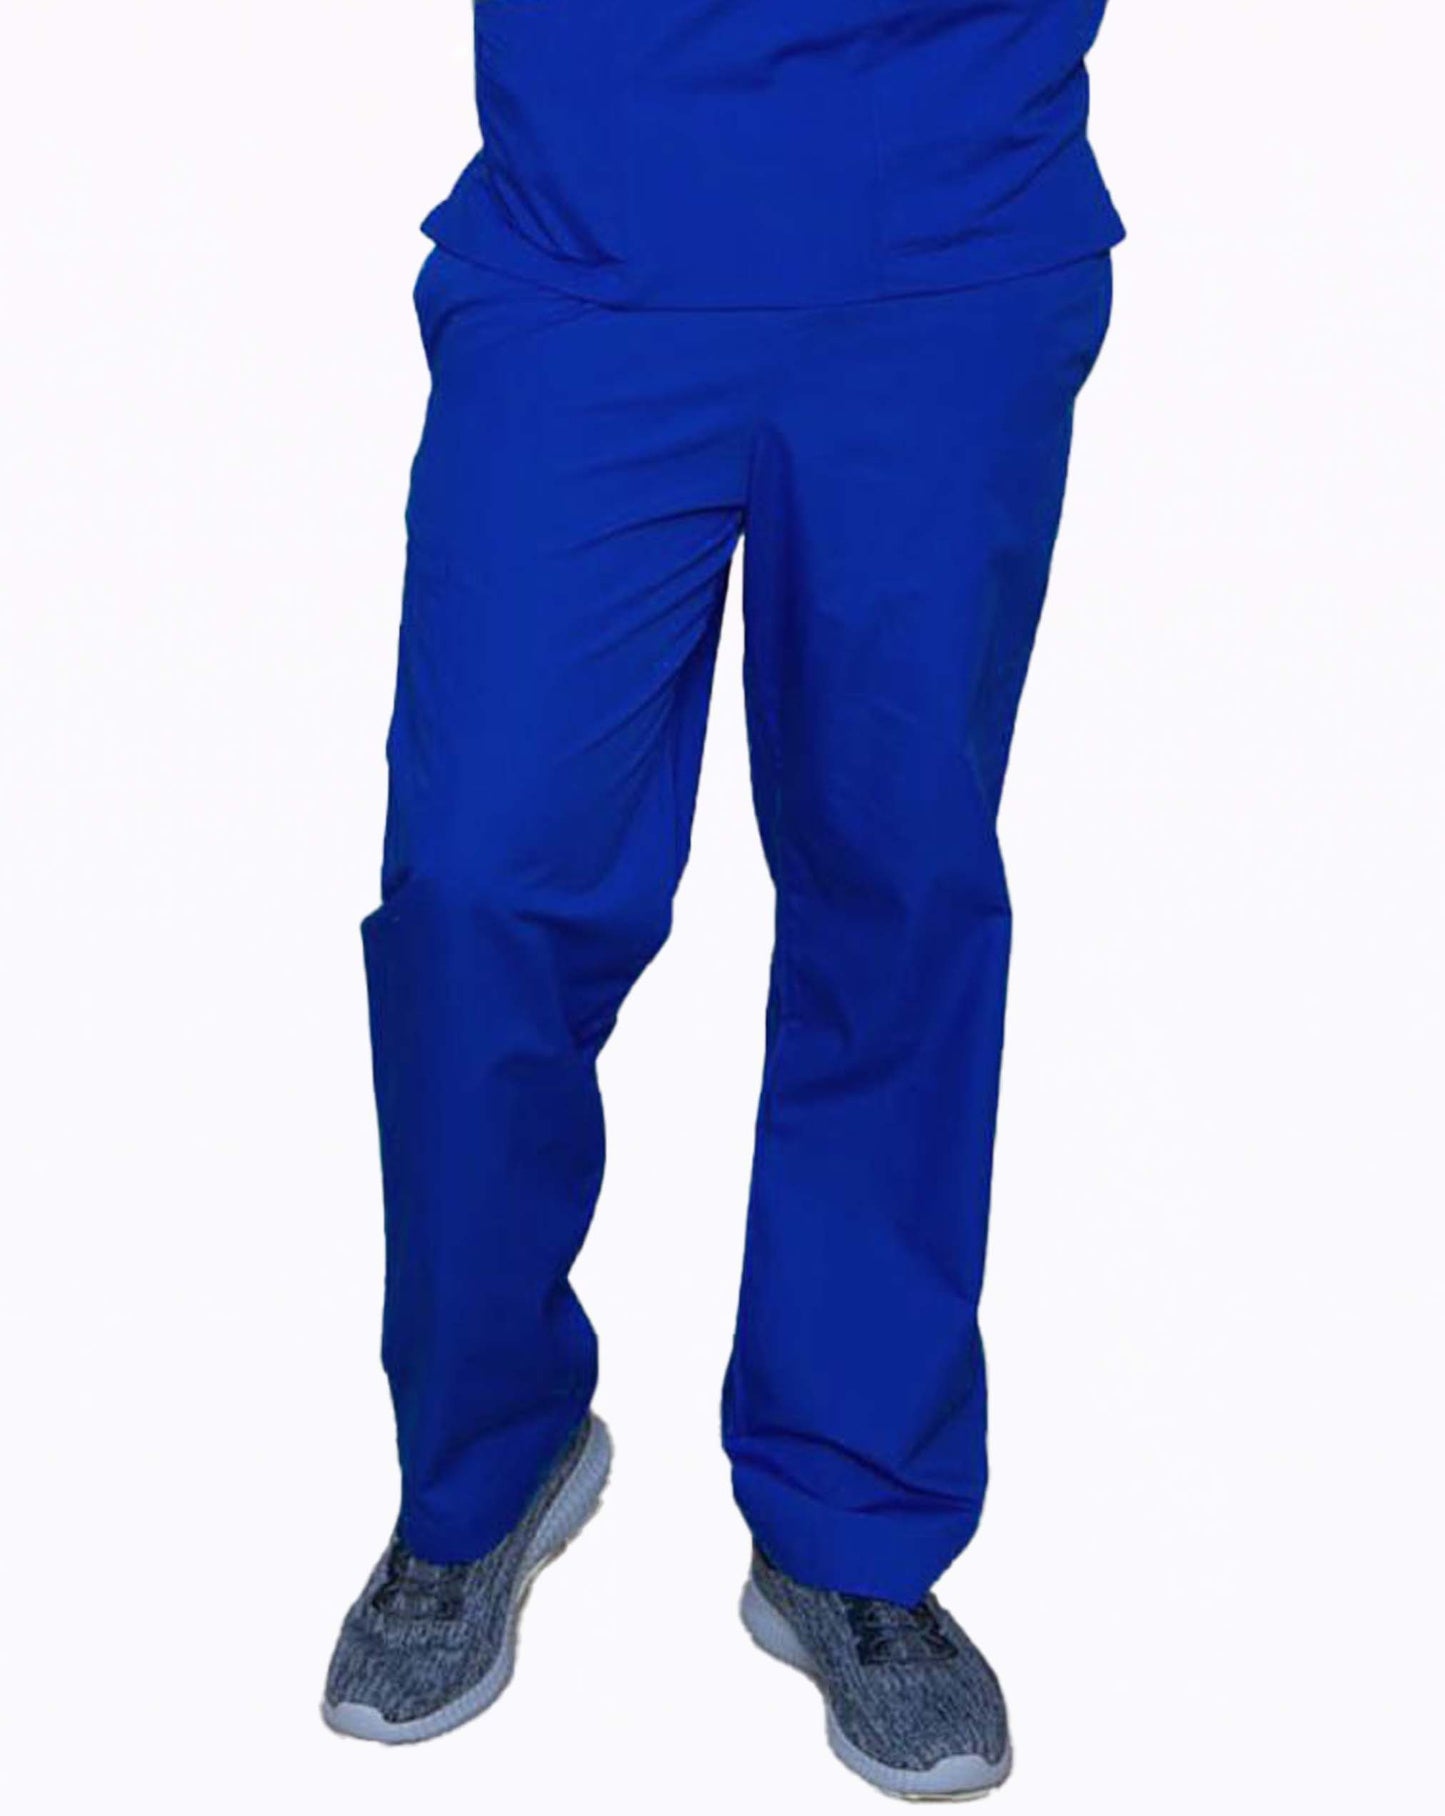 royal blue scrub trouser